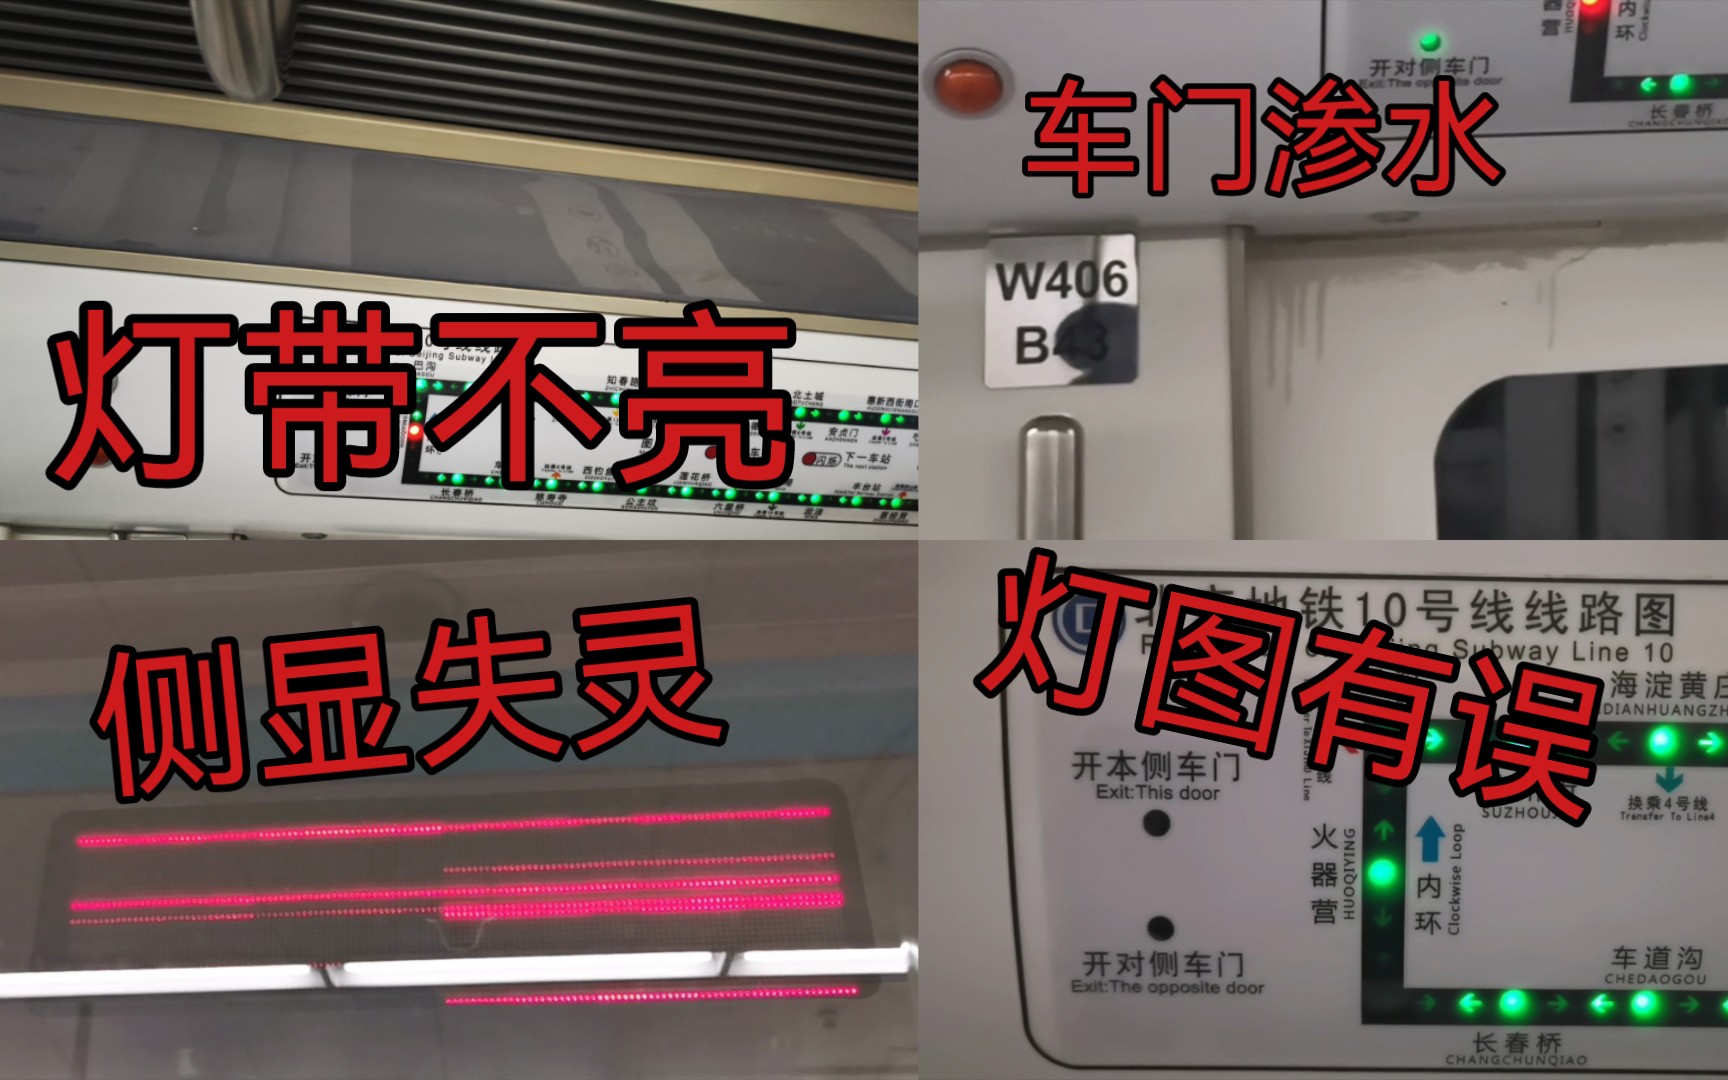 【北京地铁】灯带不亮，车门渗水，灯图有误，侧显失灵———W406车组现状